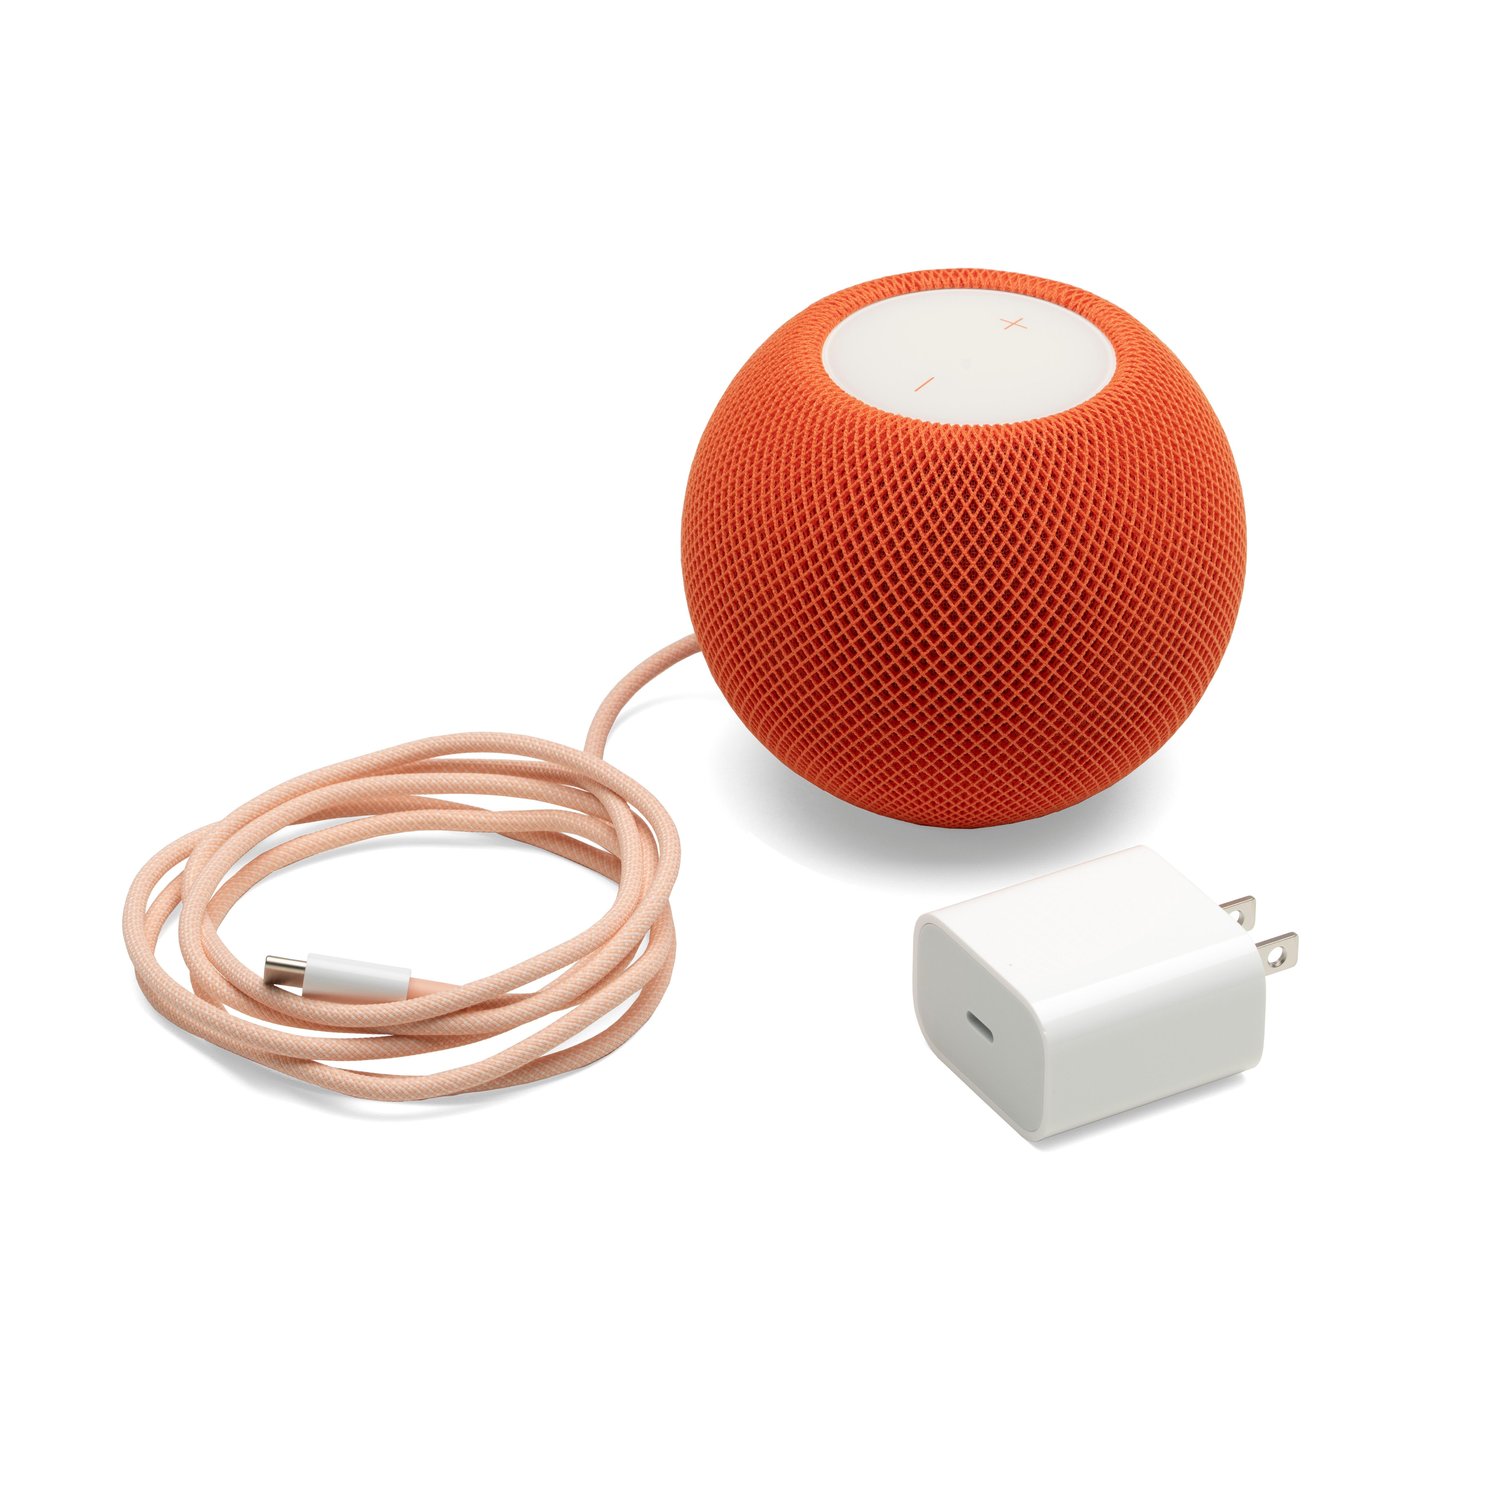 Apple 4J2D3LL/A HomePod mini - Orange at